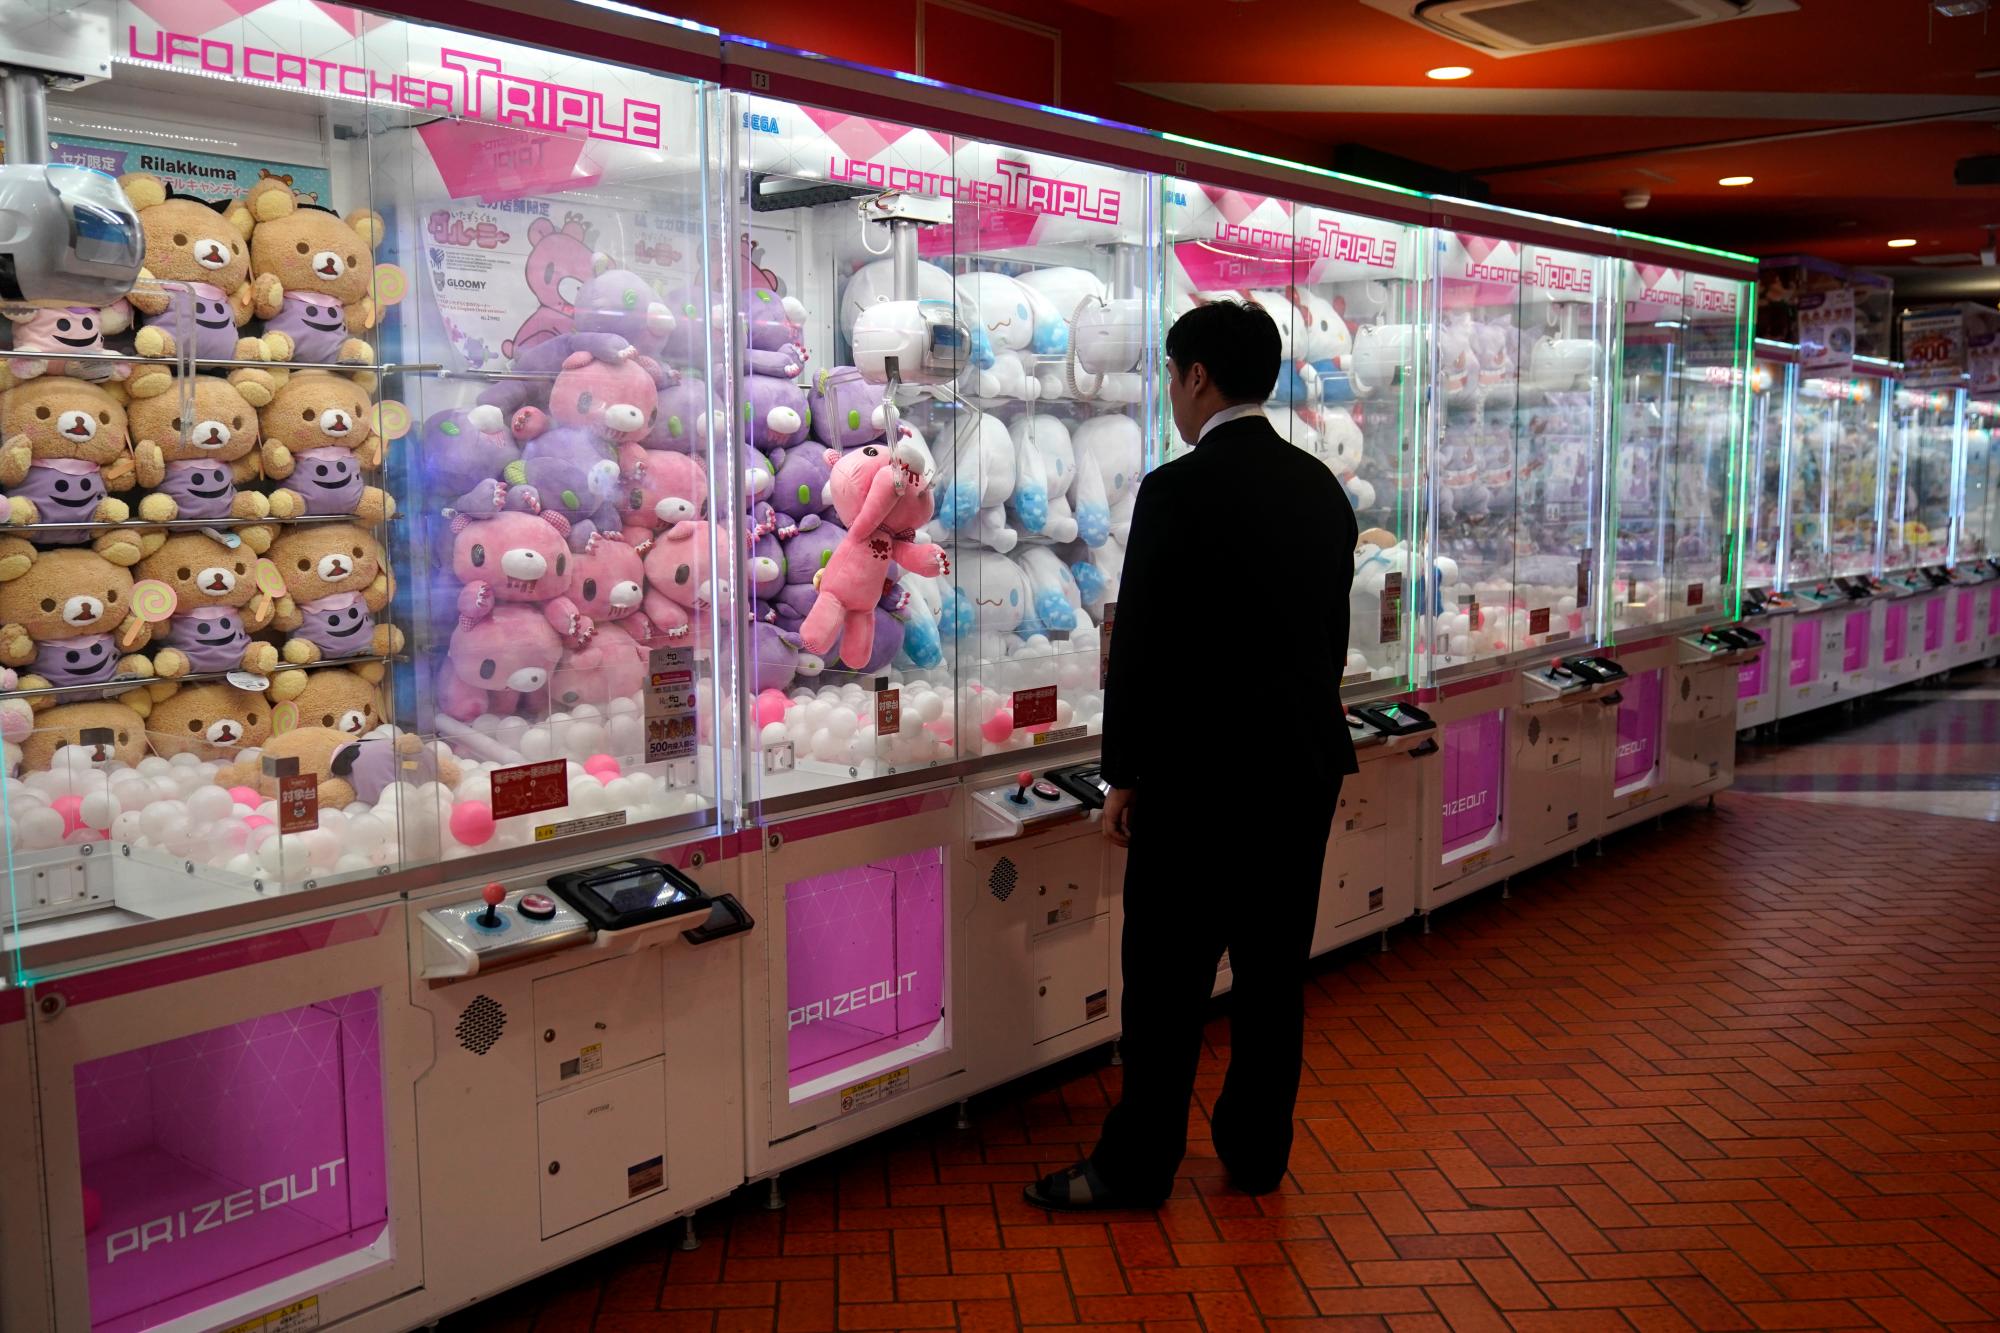 Un hombre vestido con un traje observa cómo una muñeca que agarró con la garra de la máquina se deja caer nuevamente dentro de la caja mientras juega un juego de grúas el miércoles 11 de septiembre de 2019 en el distrito de Akihabara de Tokio. 